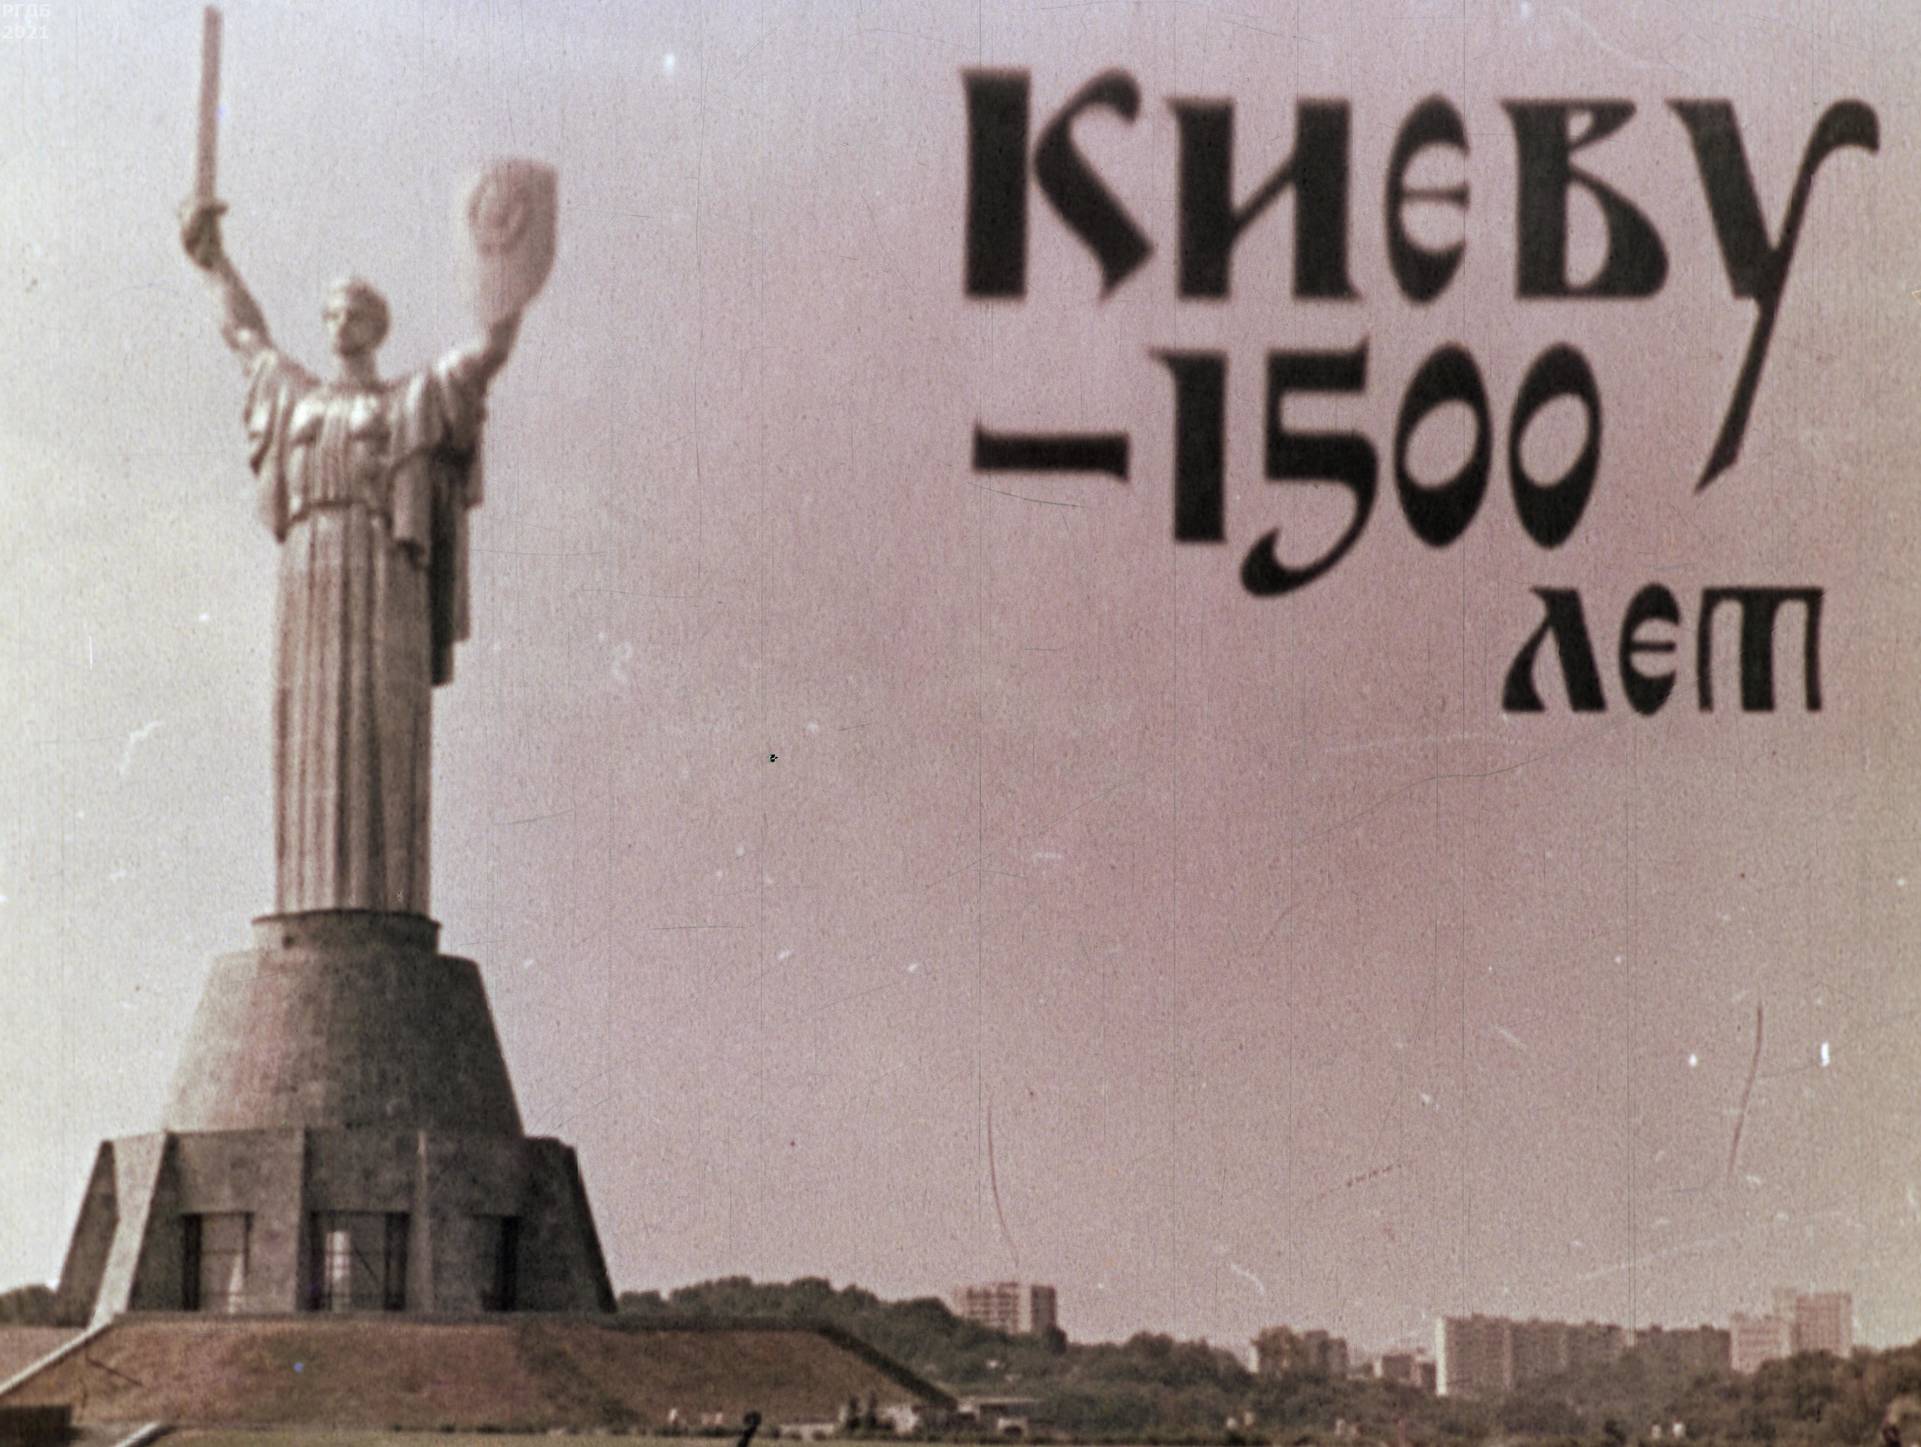 Киеву - 1500 лет